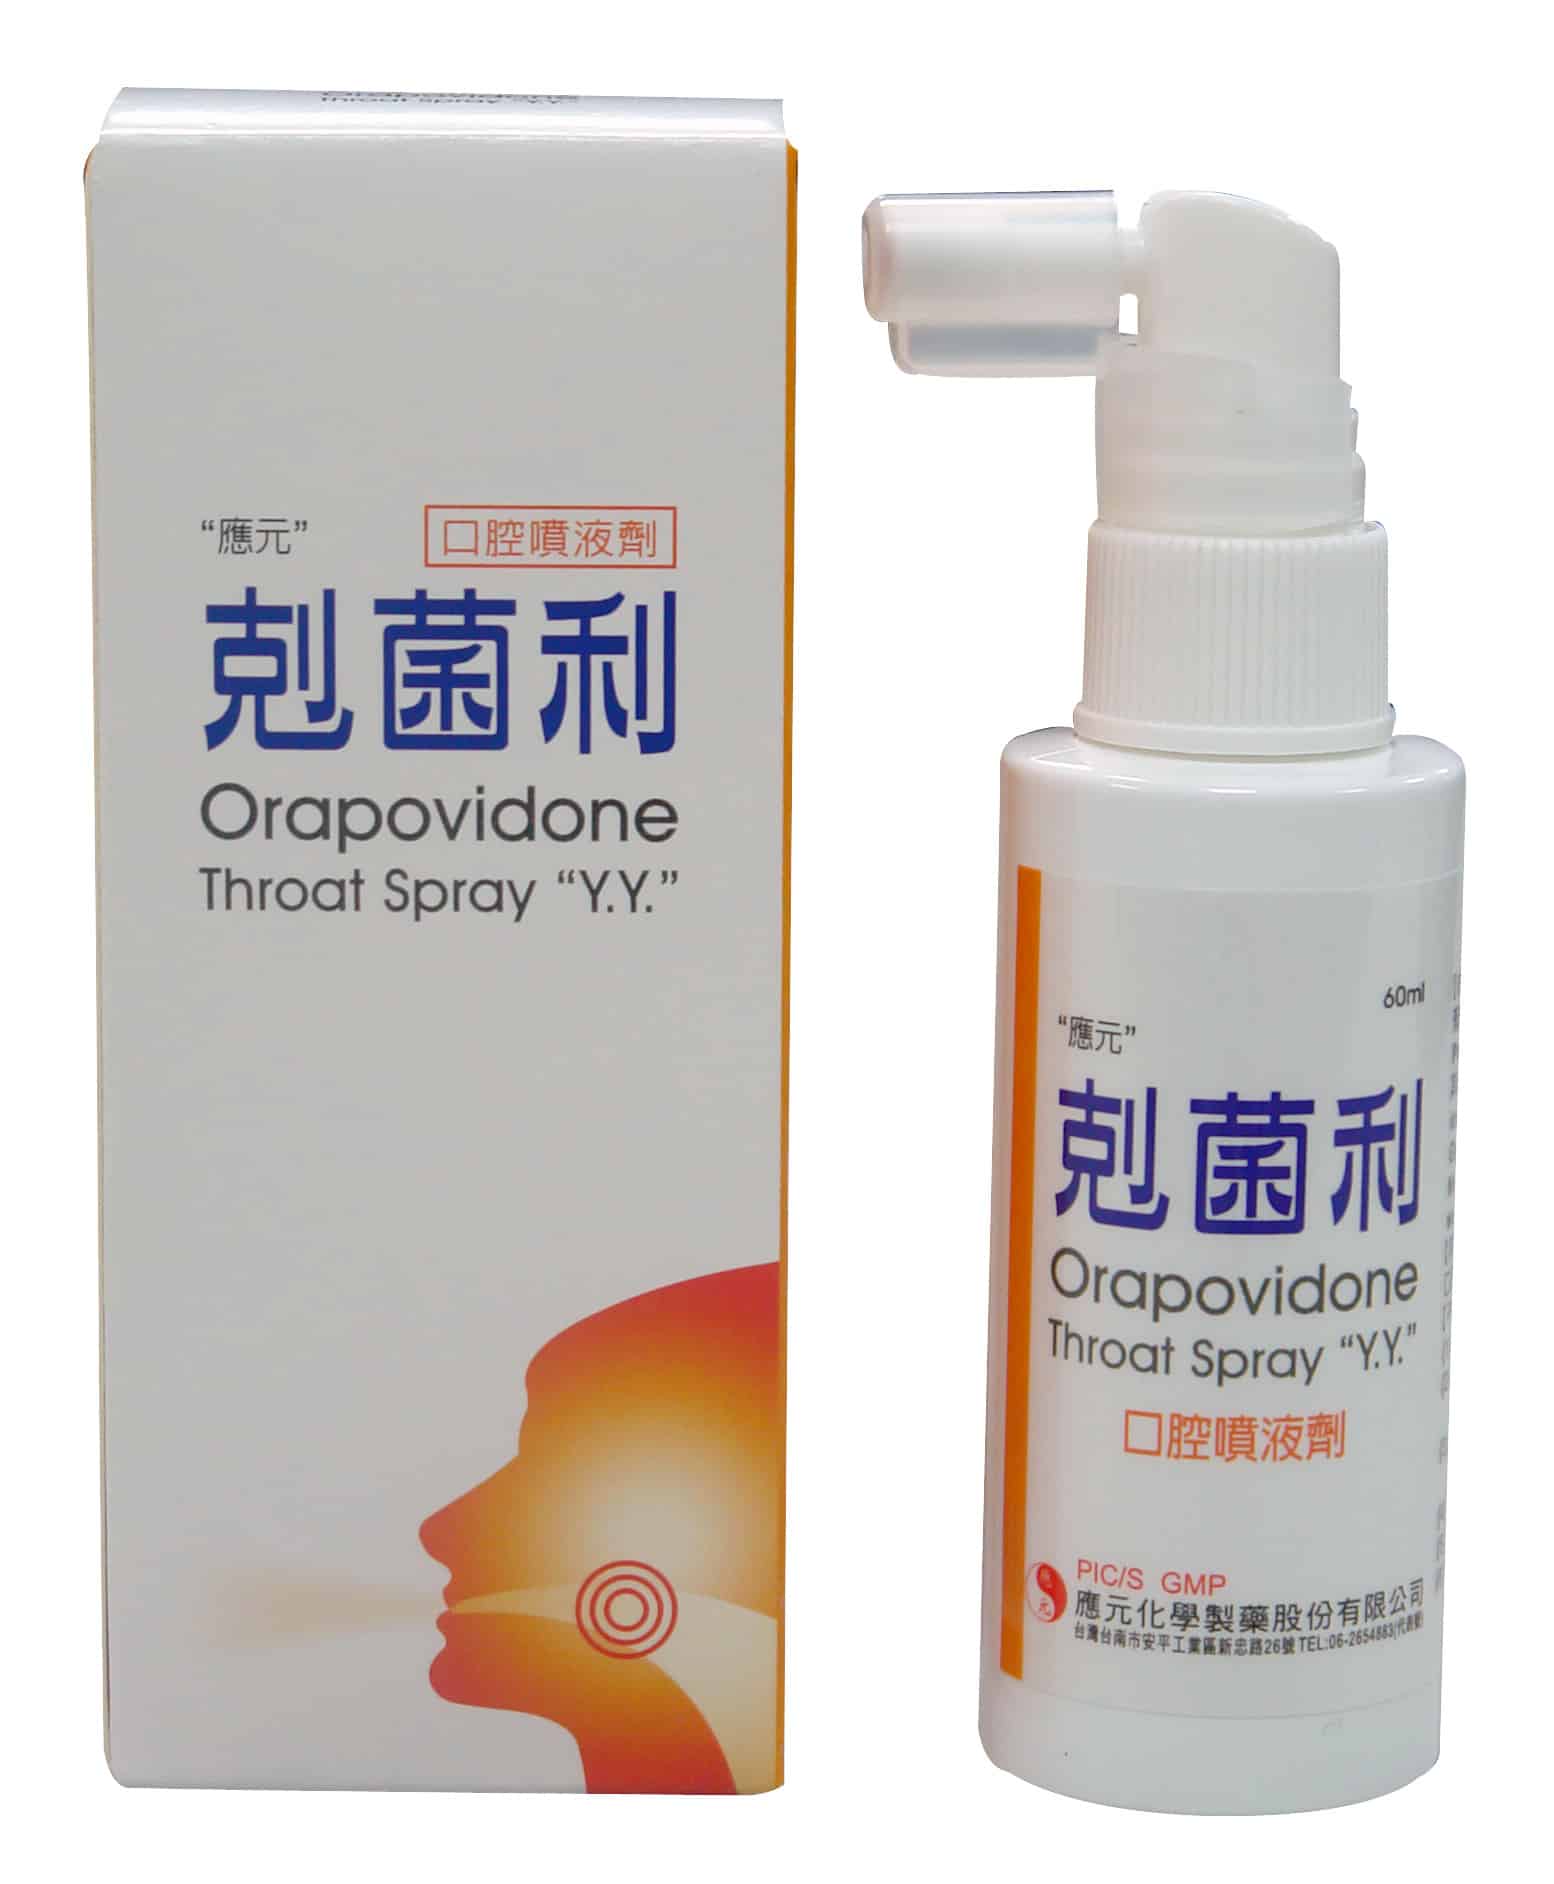 Orapovidone Throat Spray “Y.Y.”